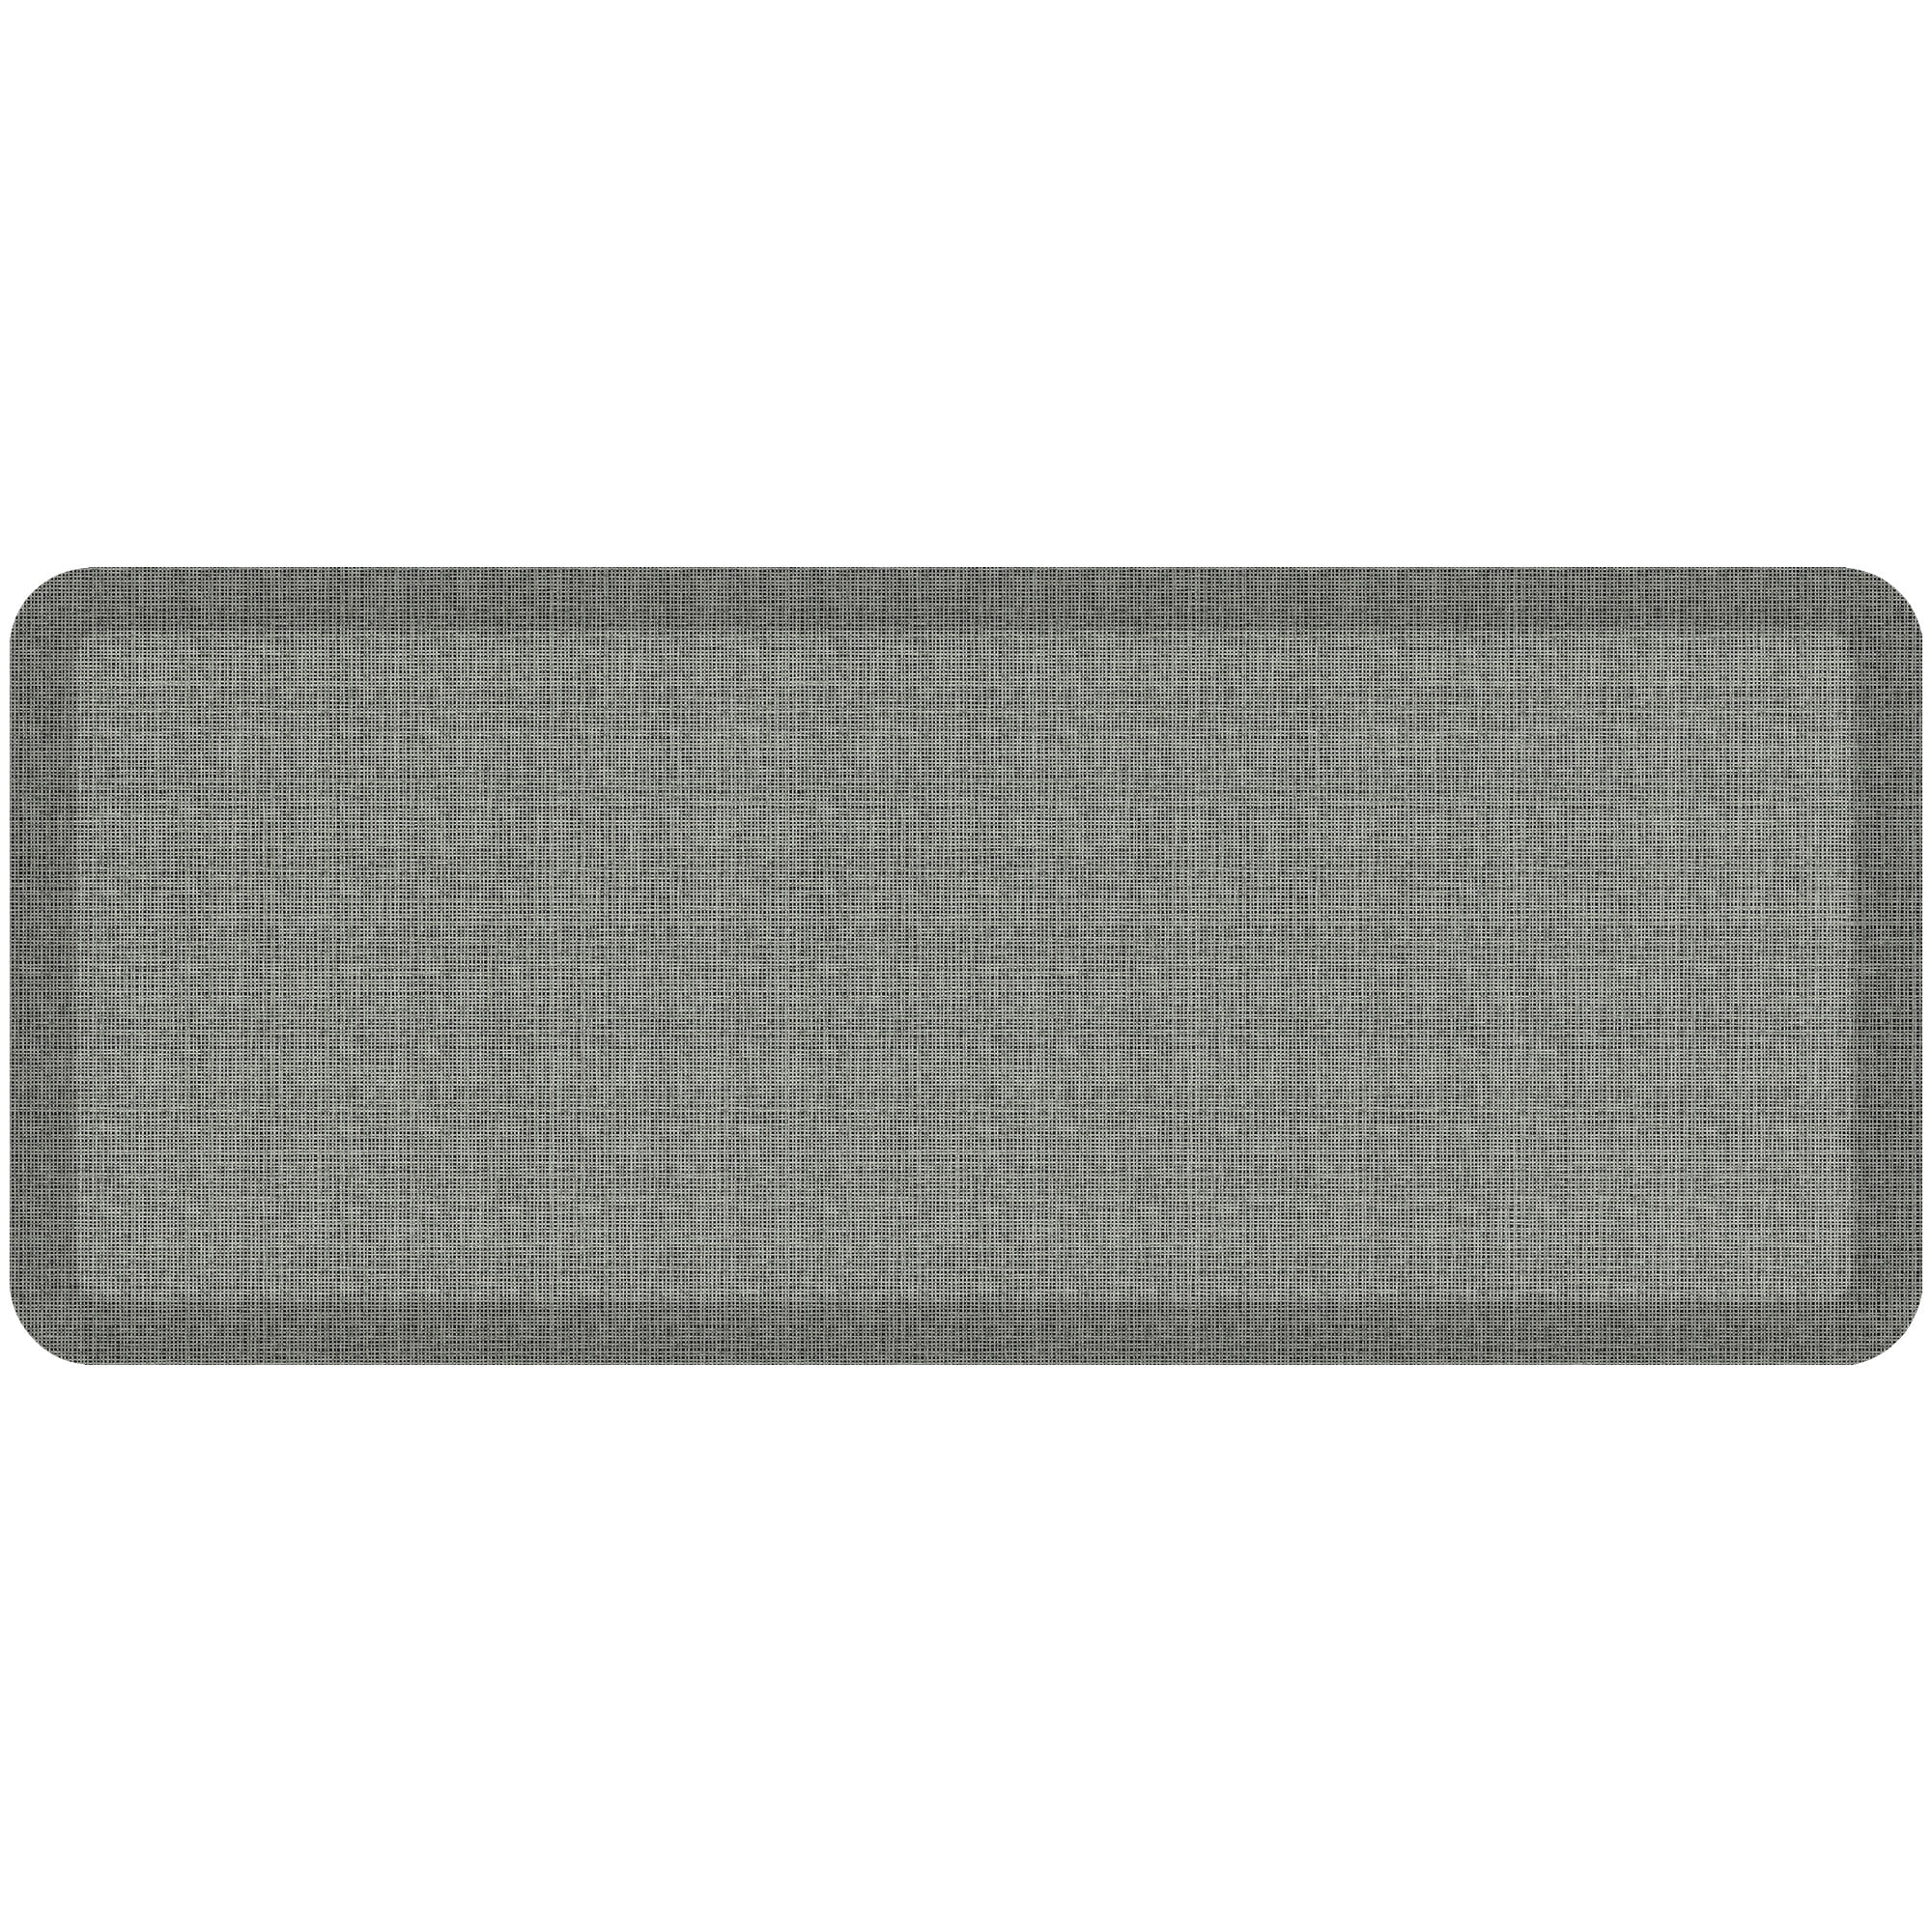 GelPro NewLife Designer Comfort Kitchen Floor Mat 20x72 Tweed Grey